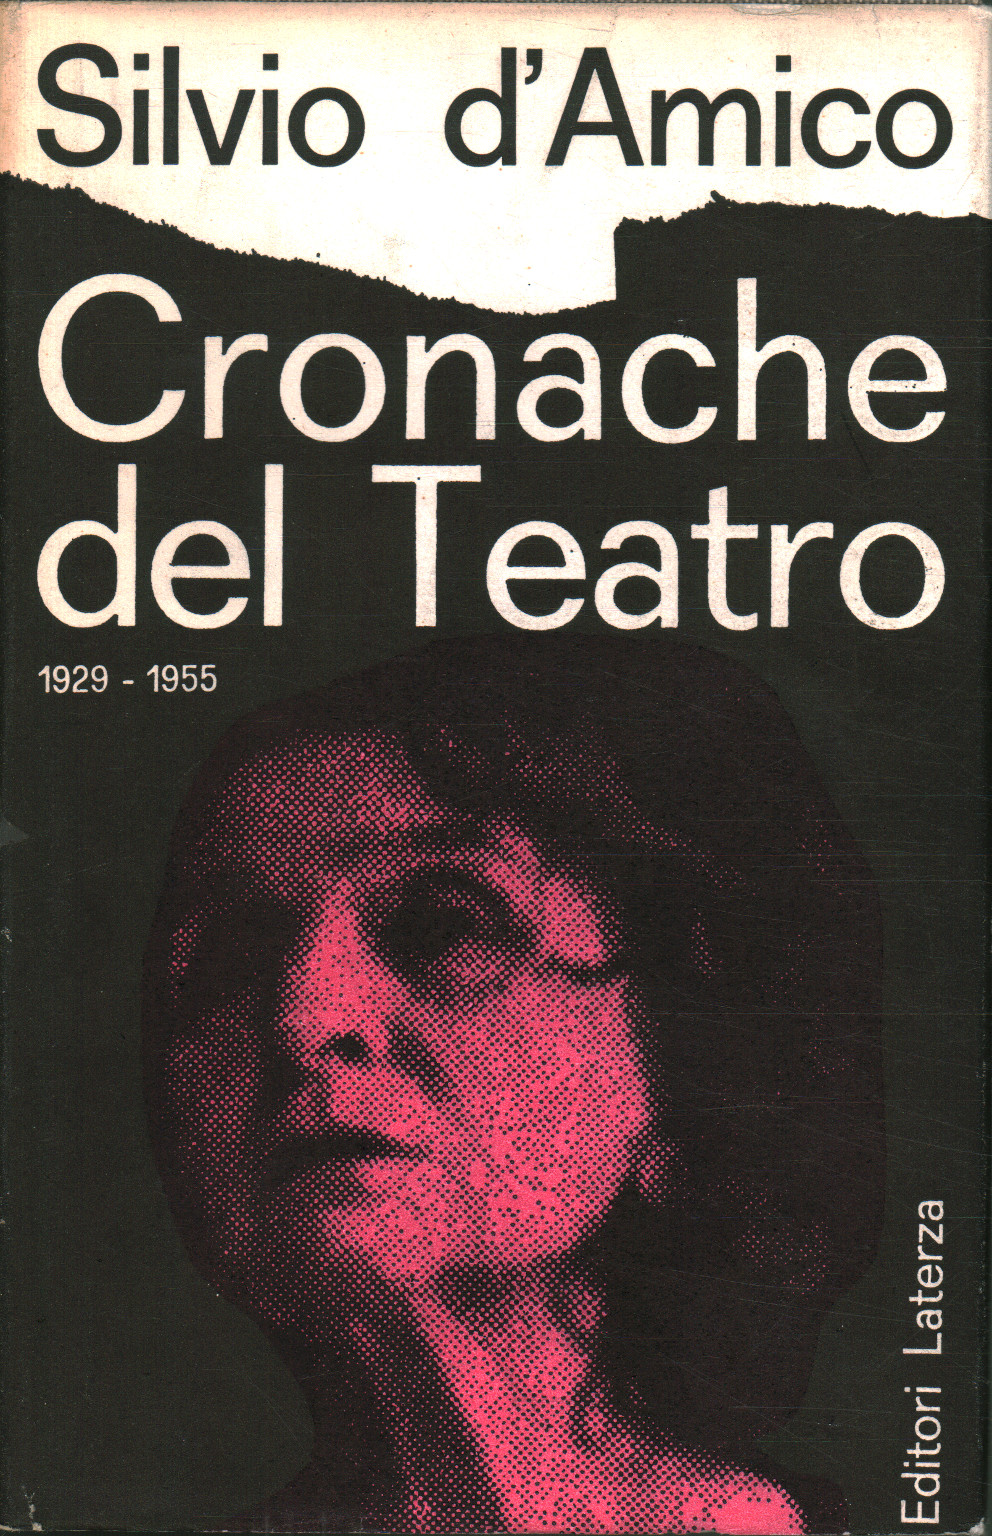 Chroniques du Théâtre (tome 2), Silvio D'Amico